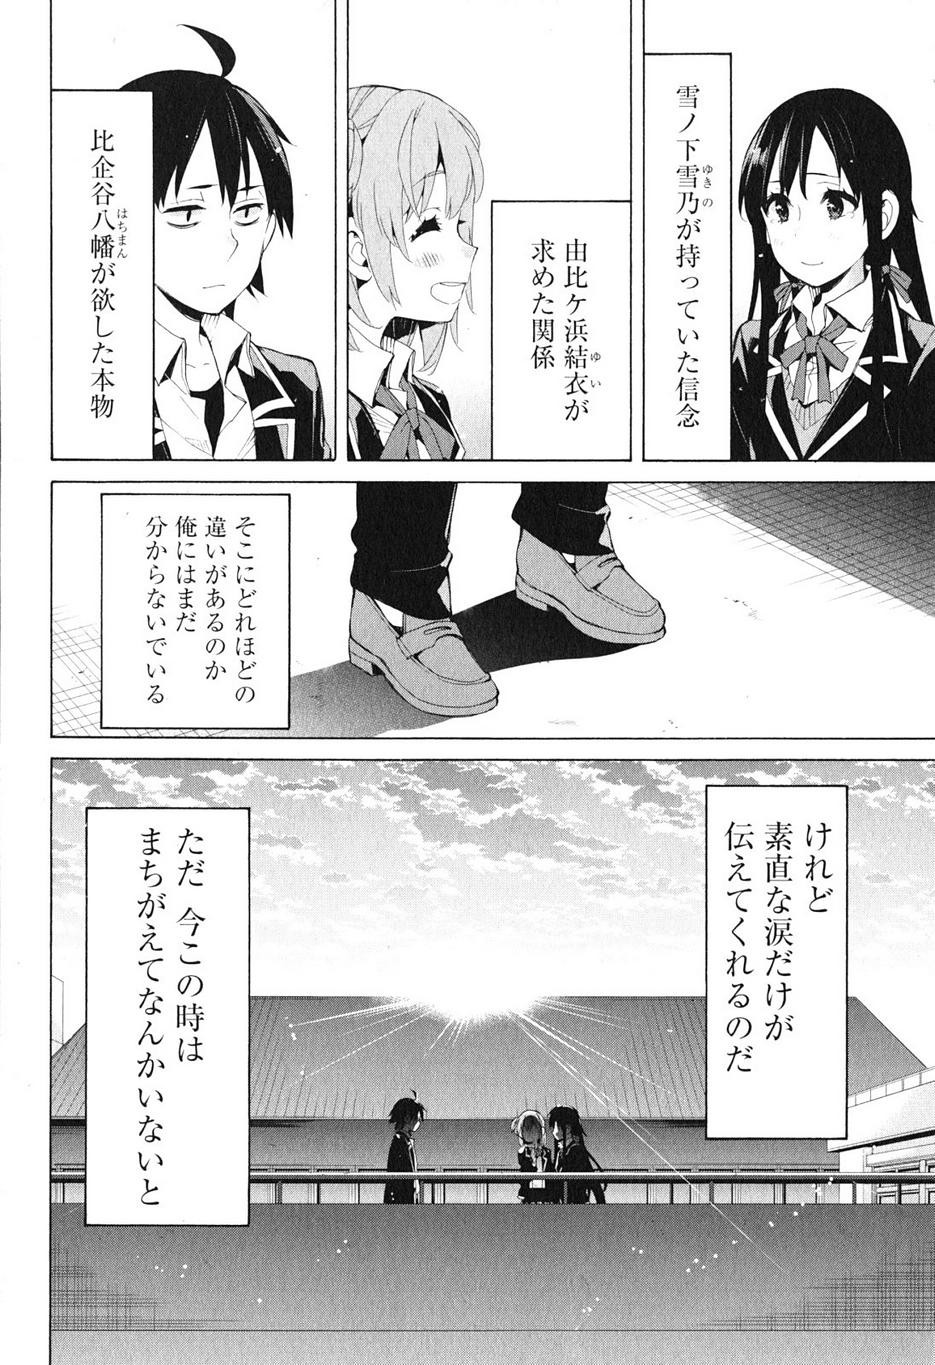 Yahari Ore no Seishun Rabukome wa Machigatte Iru. - Monologue - Chapter 40 - Page 41